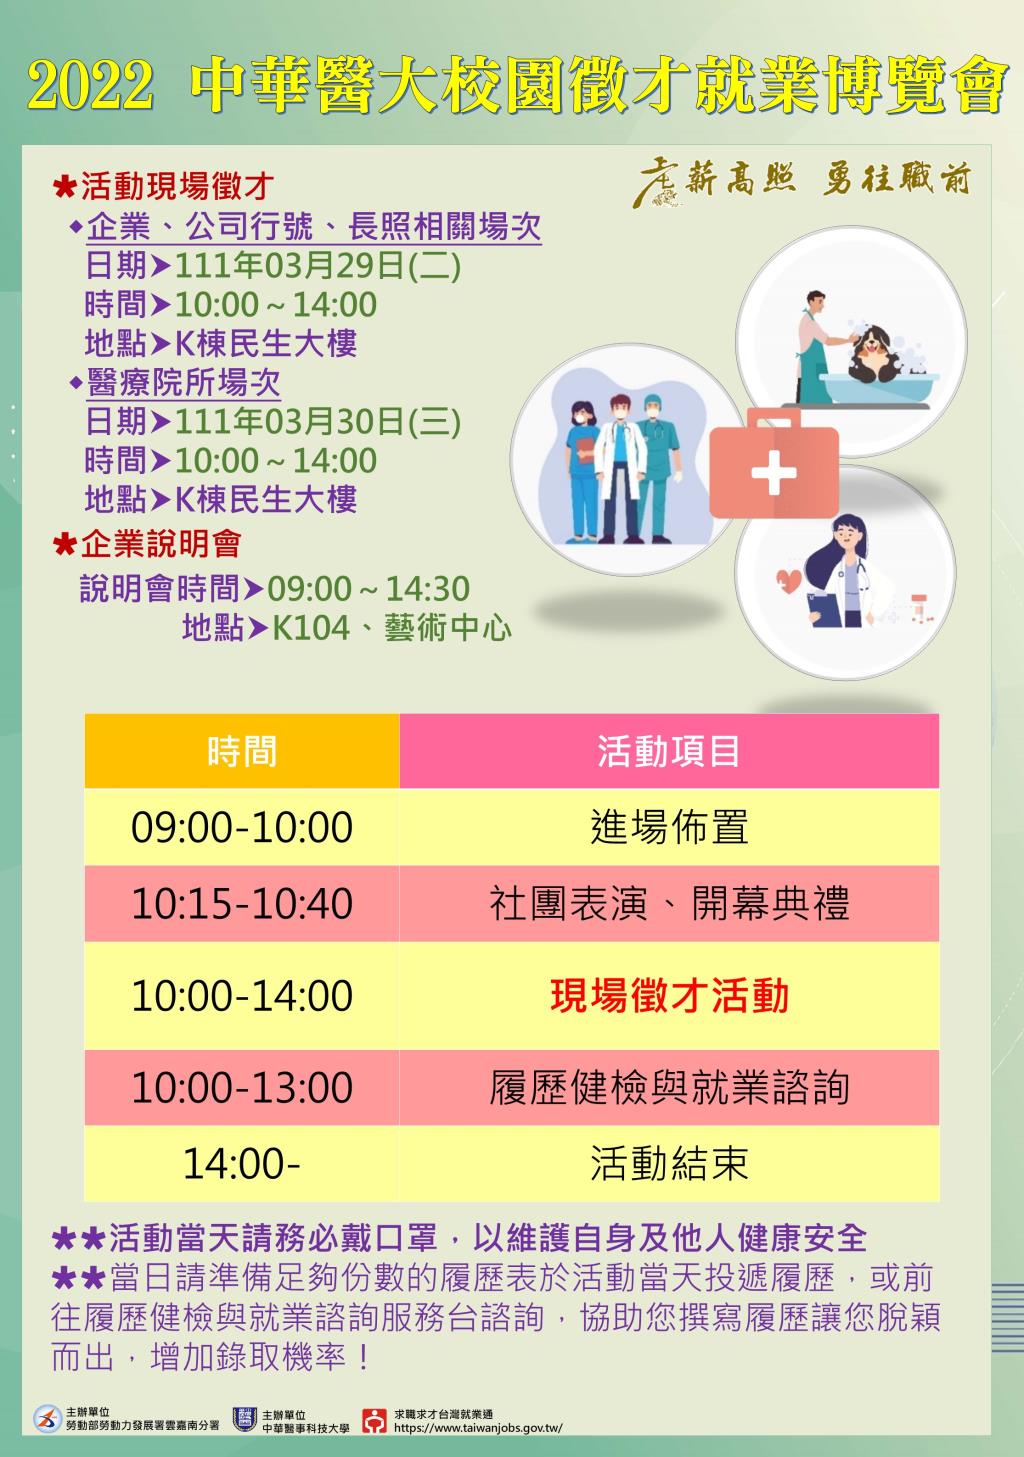 中華醫事科技大學2022華醫校園徵才就業博覽會